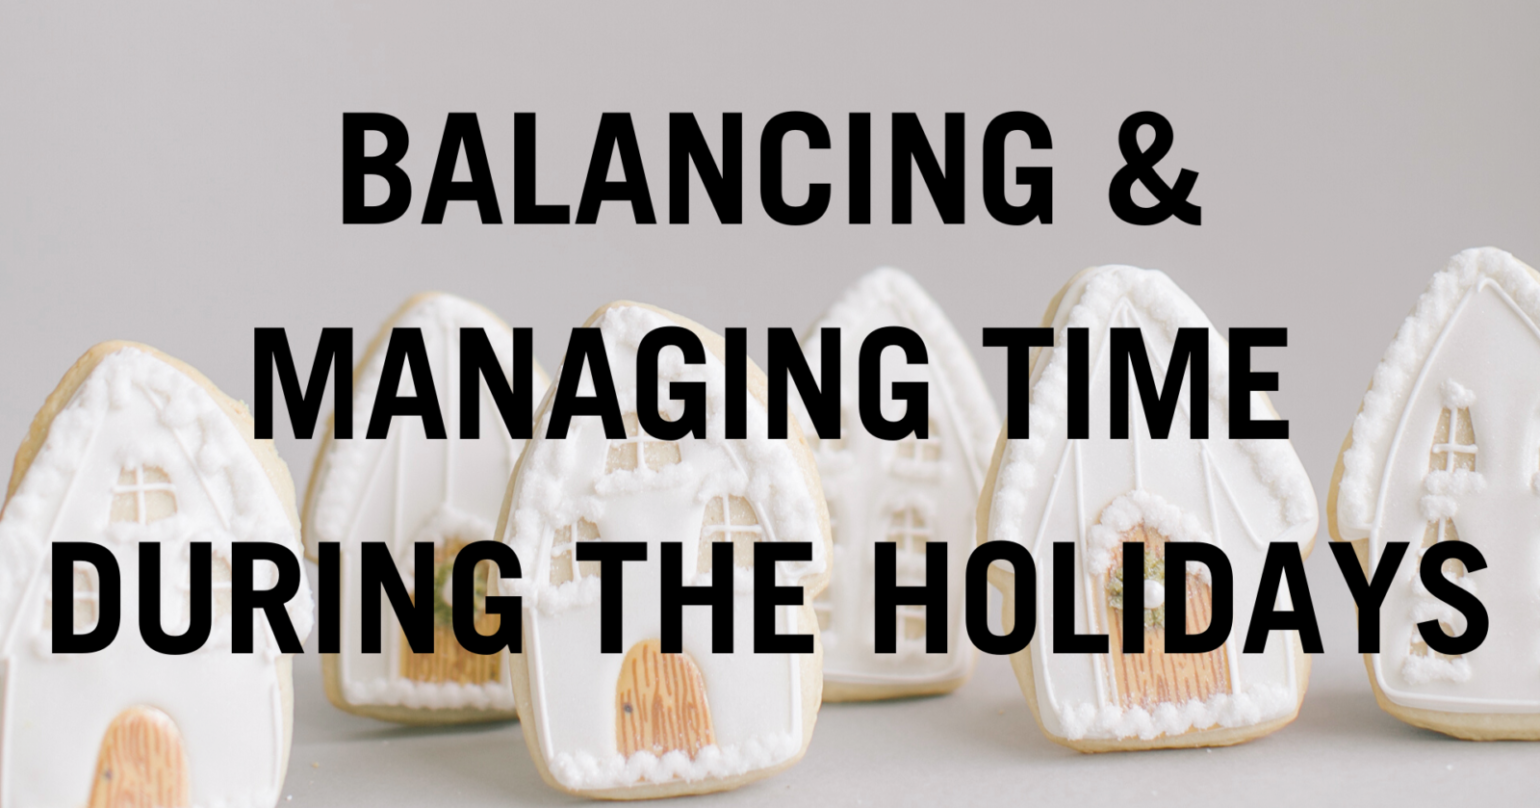 Wanting Holiday Balance